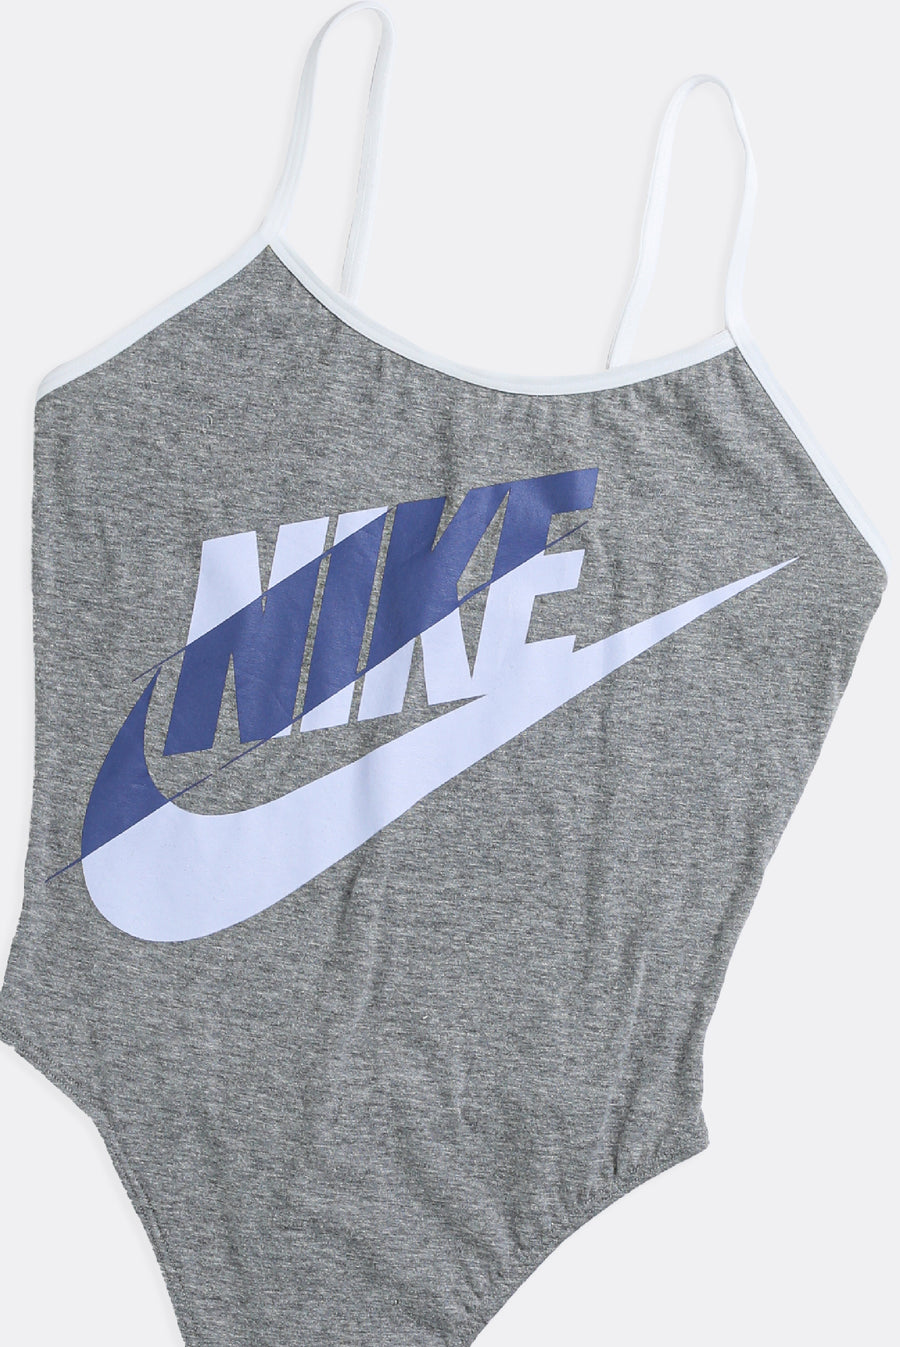 Rework Nike Bodysuit - M